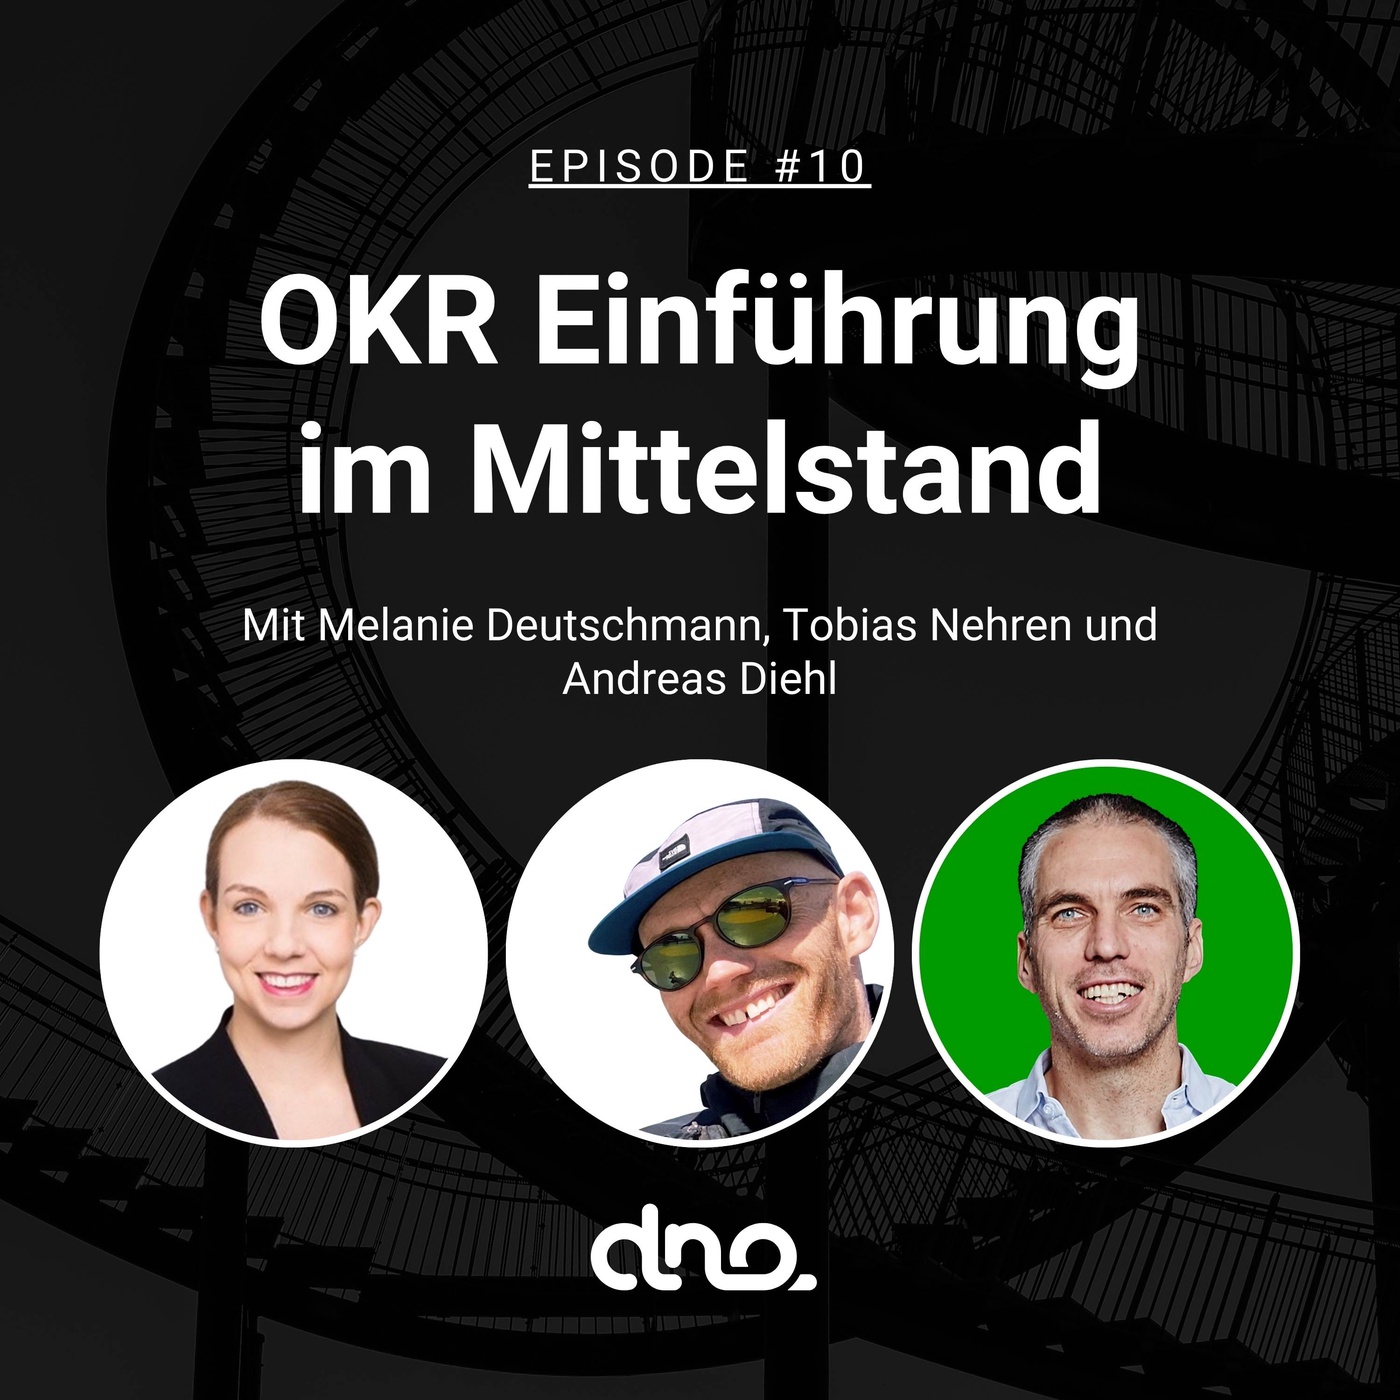 #10 - OKR Einführung Mittelstand mit Melanie Deutschmann und Tobias Nehren